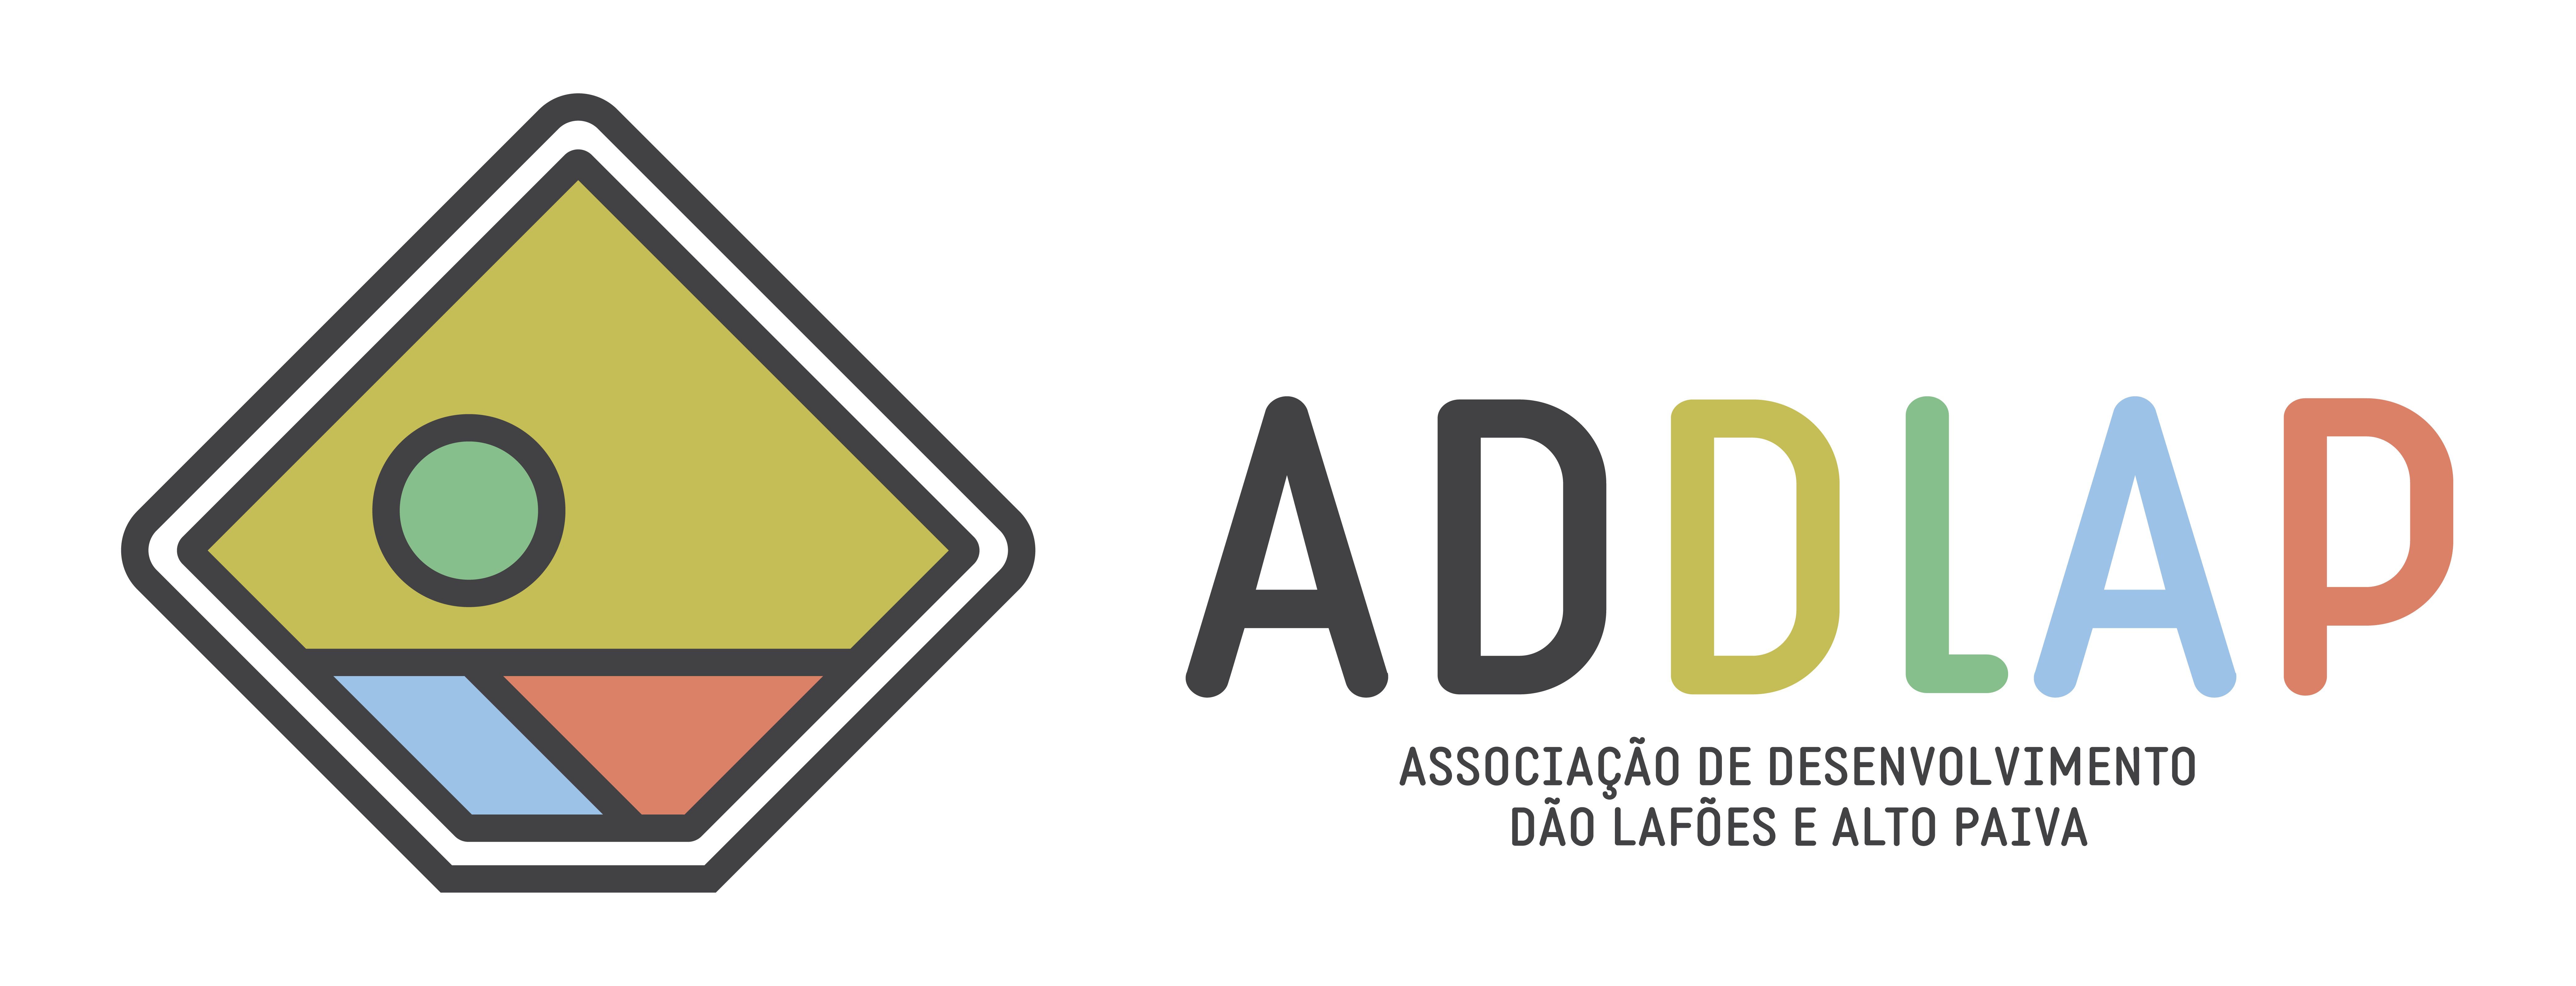 ADDLAP (Associação de Desenvolvimento Dão Lafões e Alto Paiva)